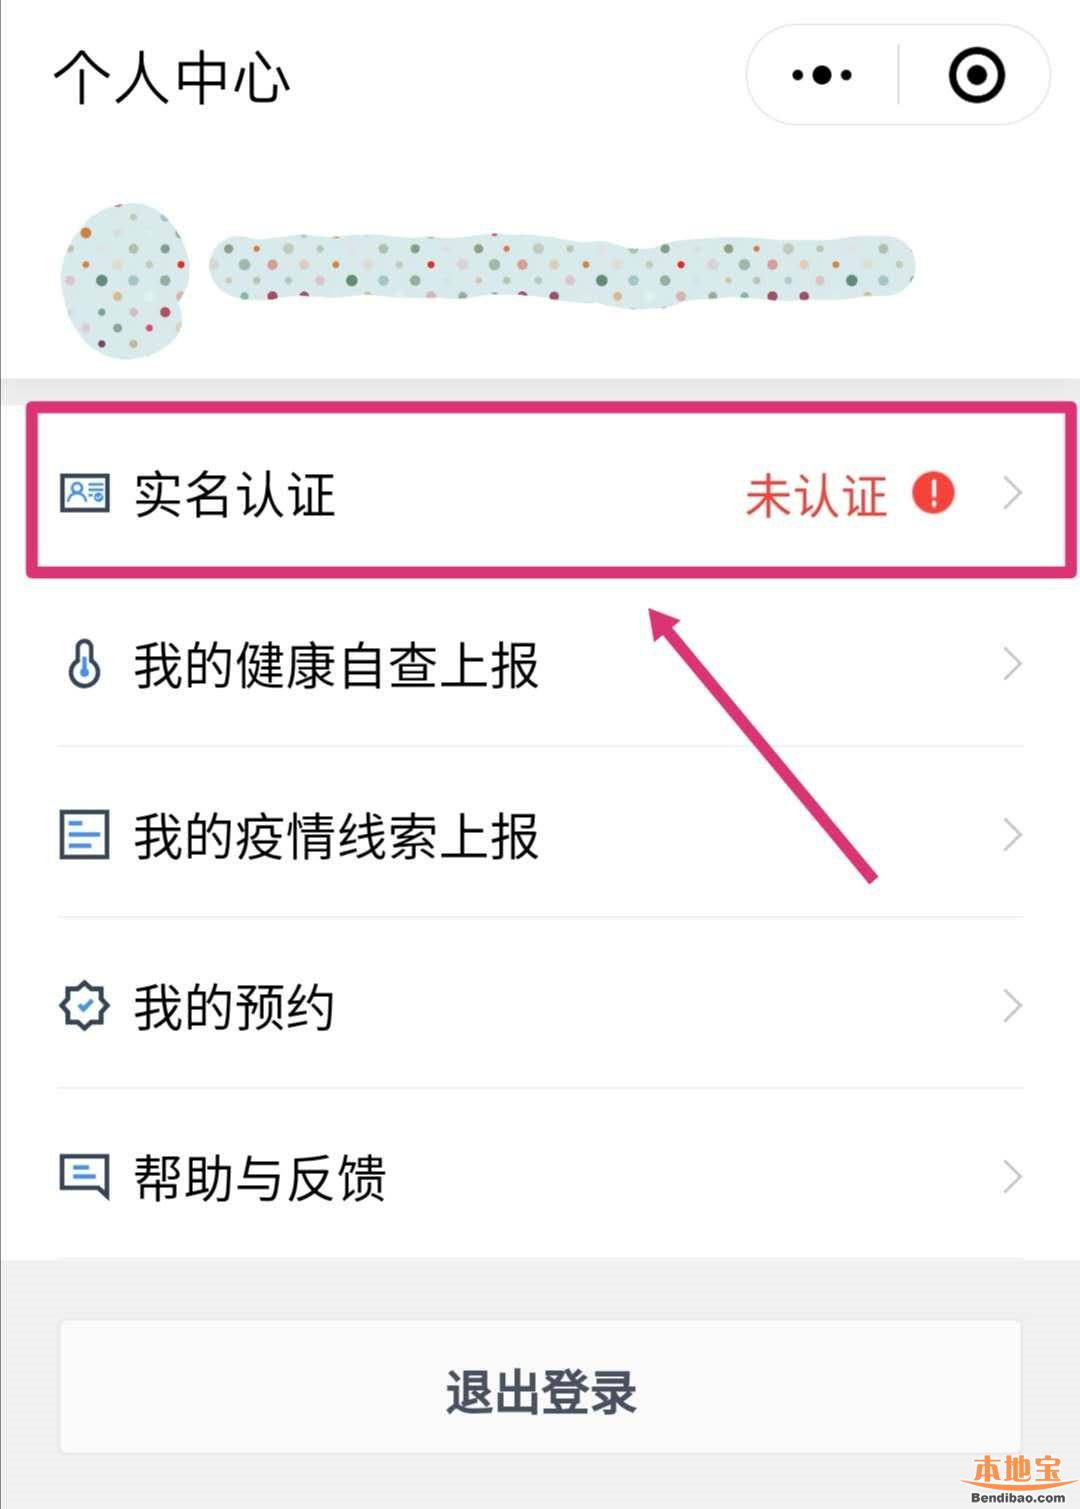 广州穗康小程序实名认证流程图解